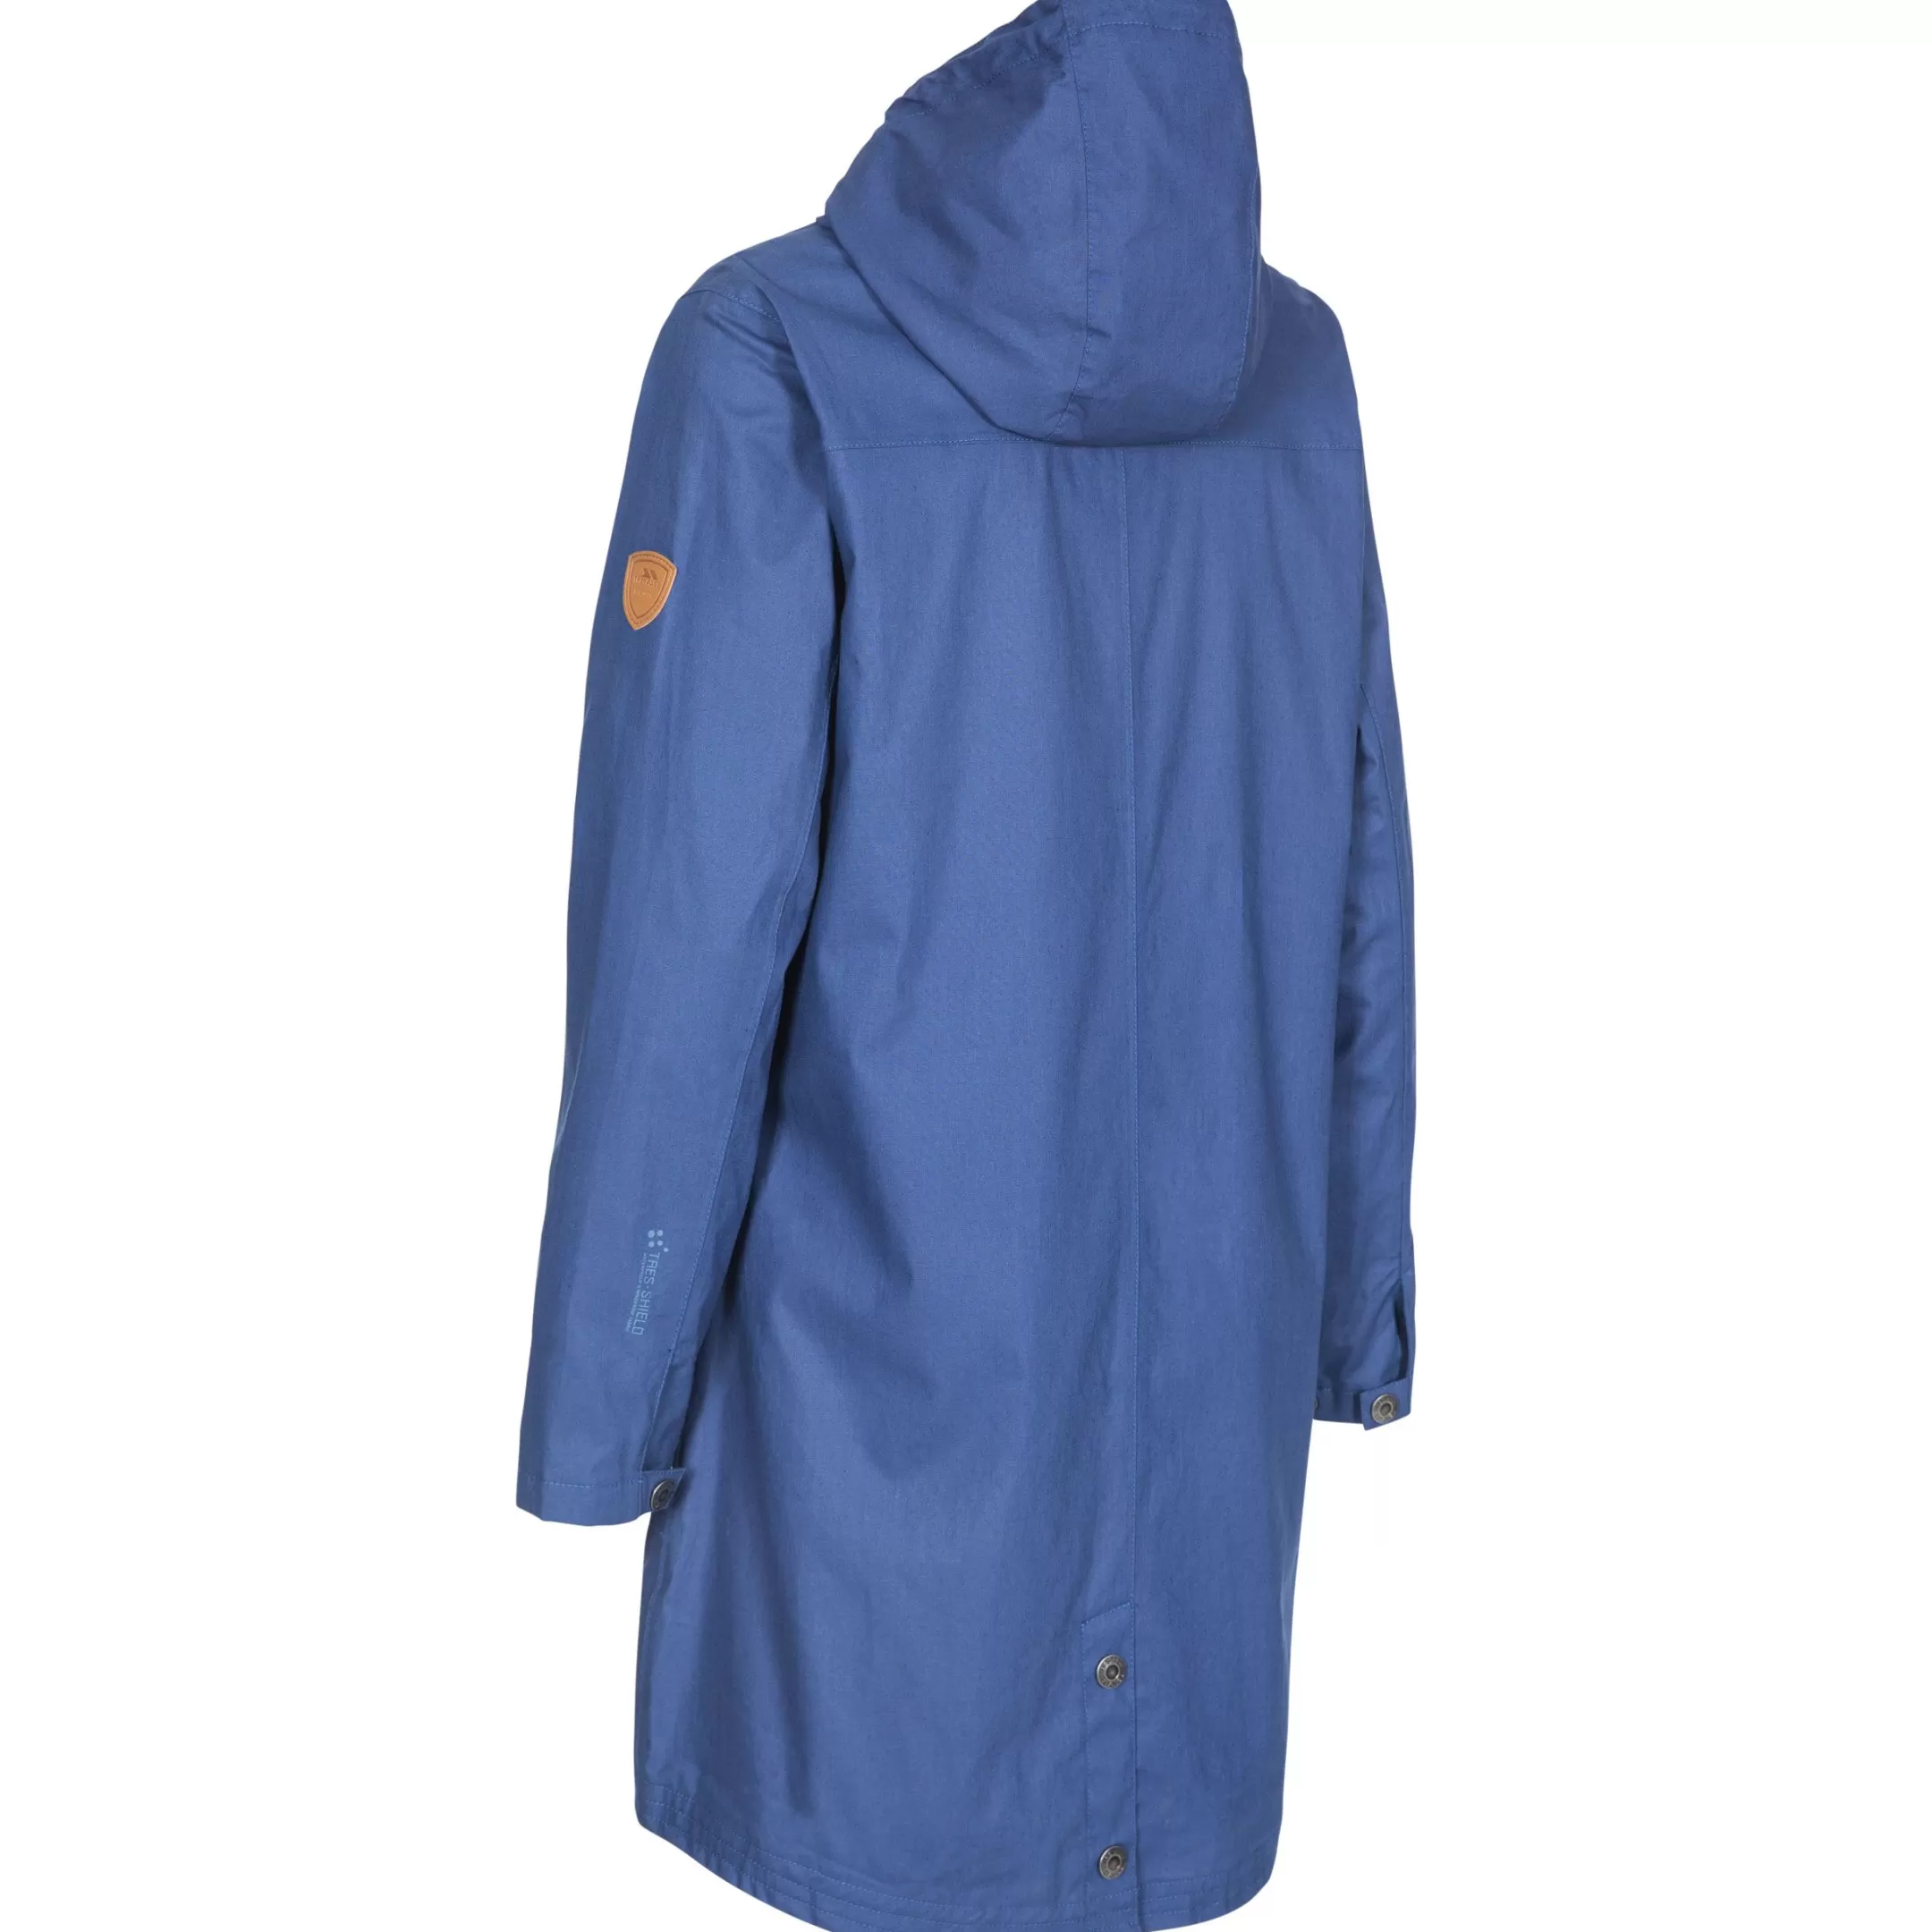 Womens Waterproof Jacket Sprinkled | Trespass Hot